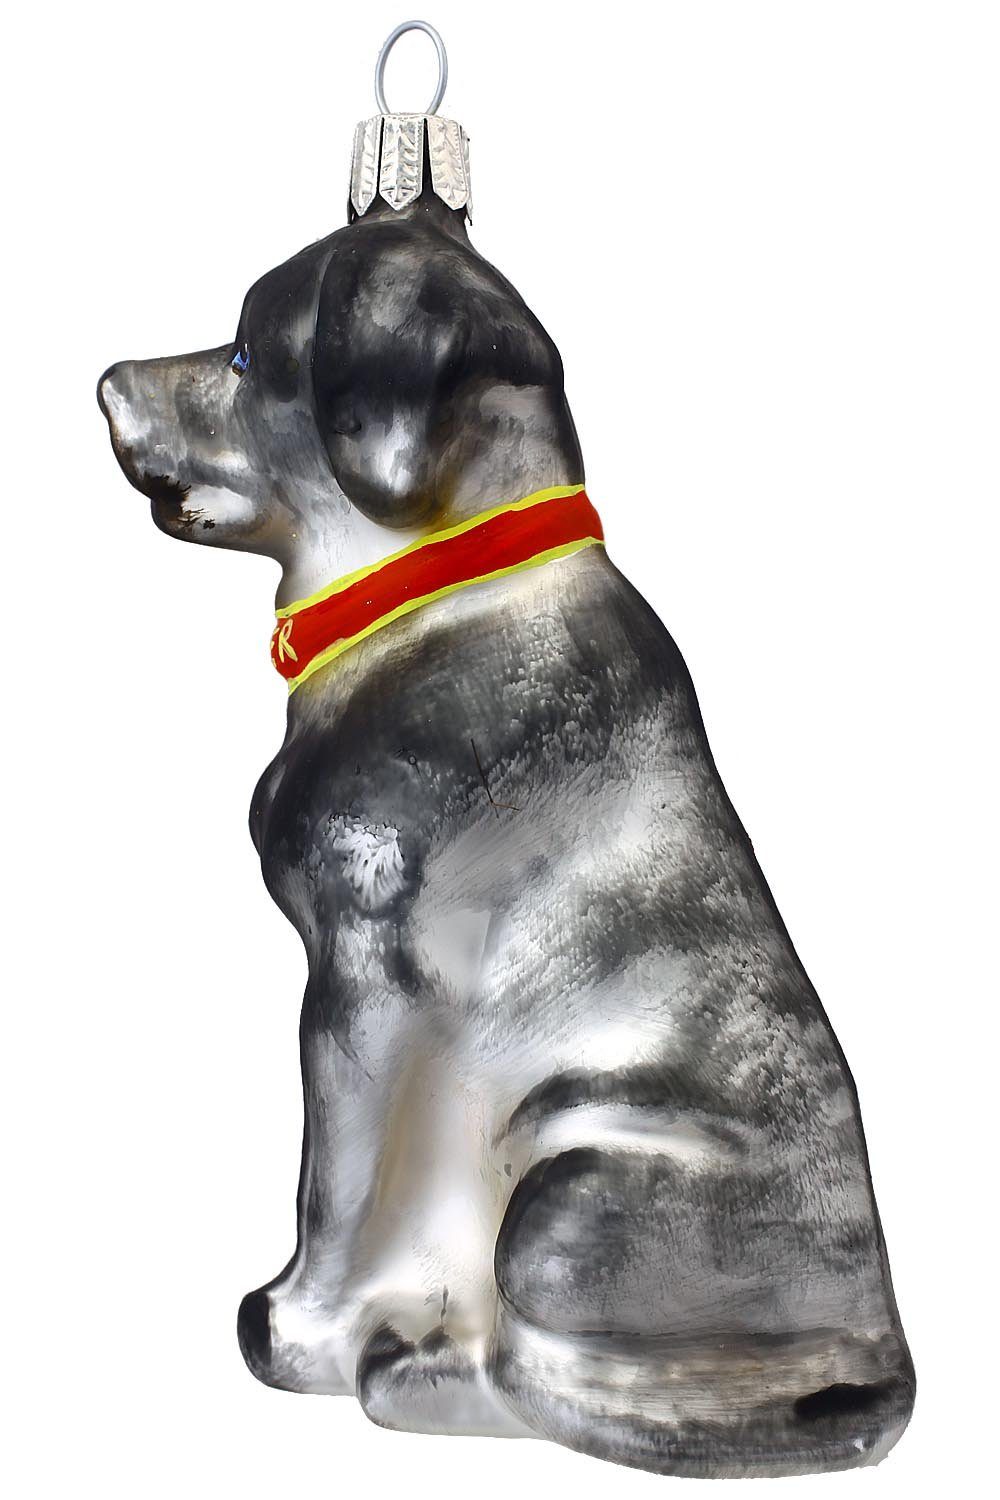 mundgeblasen Christbaumschmuck grau/weiss, Hamburger handdekoriert Weihnachtskontor - Labrador